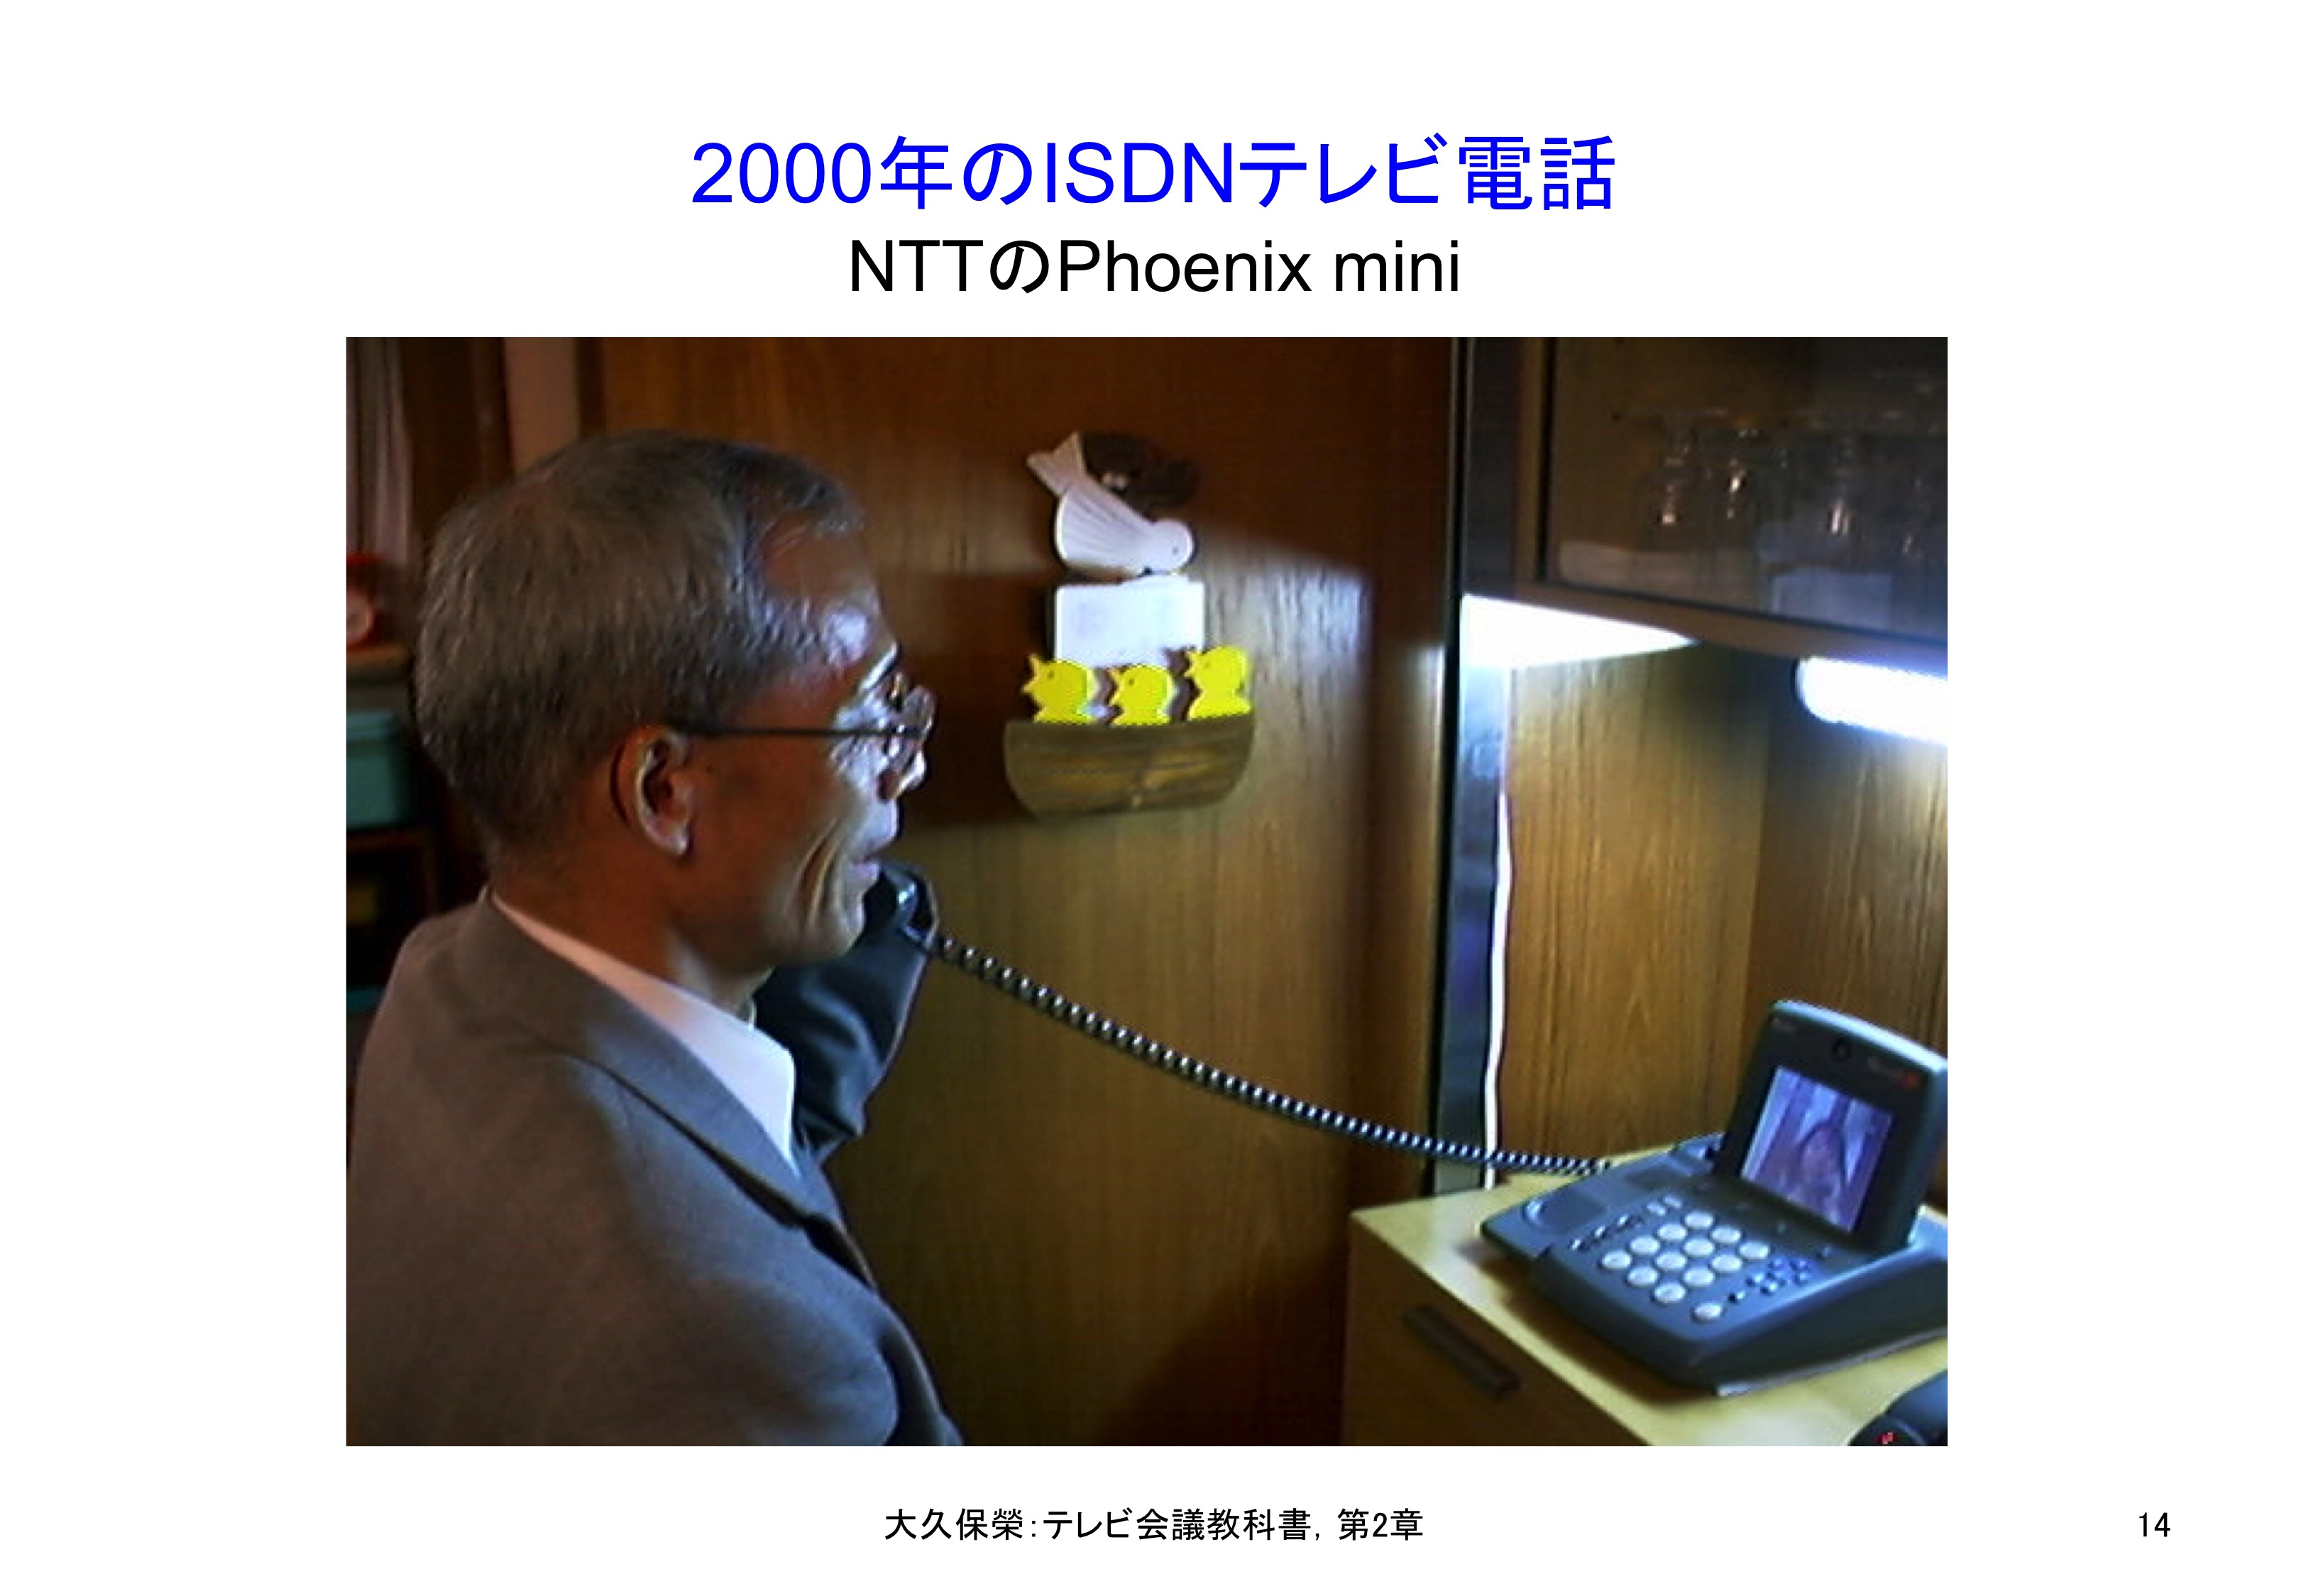 図2-14 ISDNテレビ電話